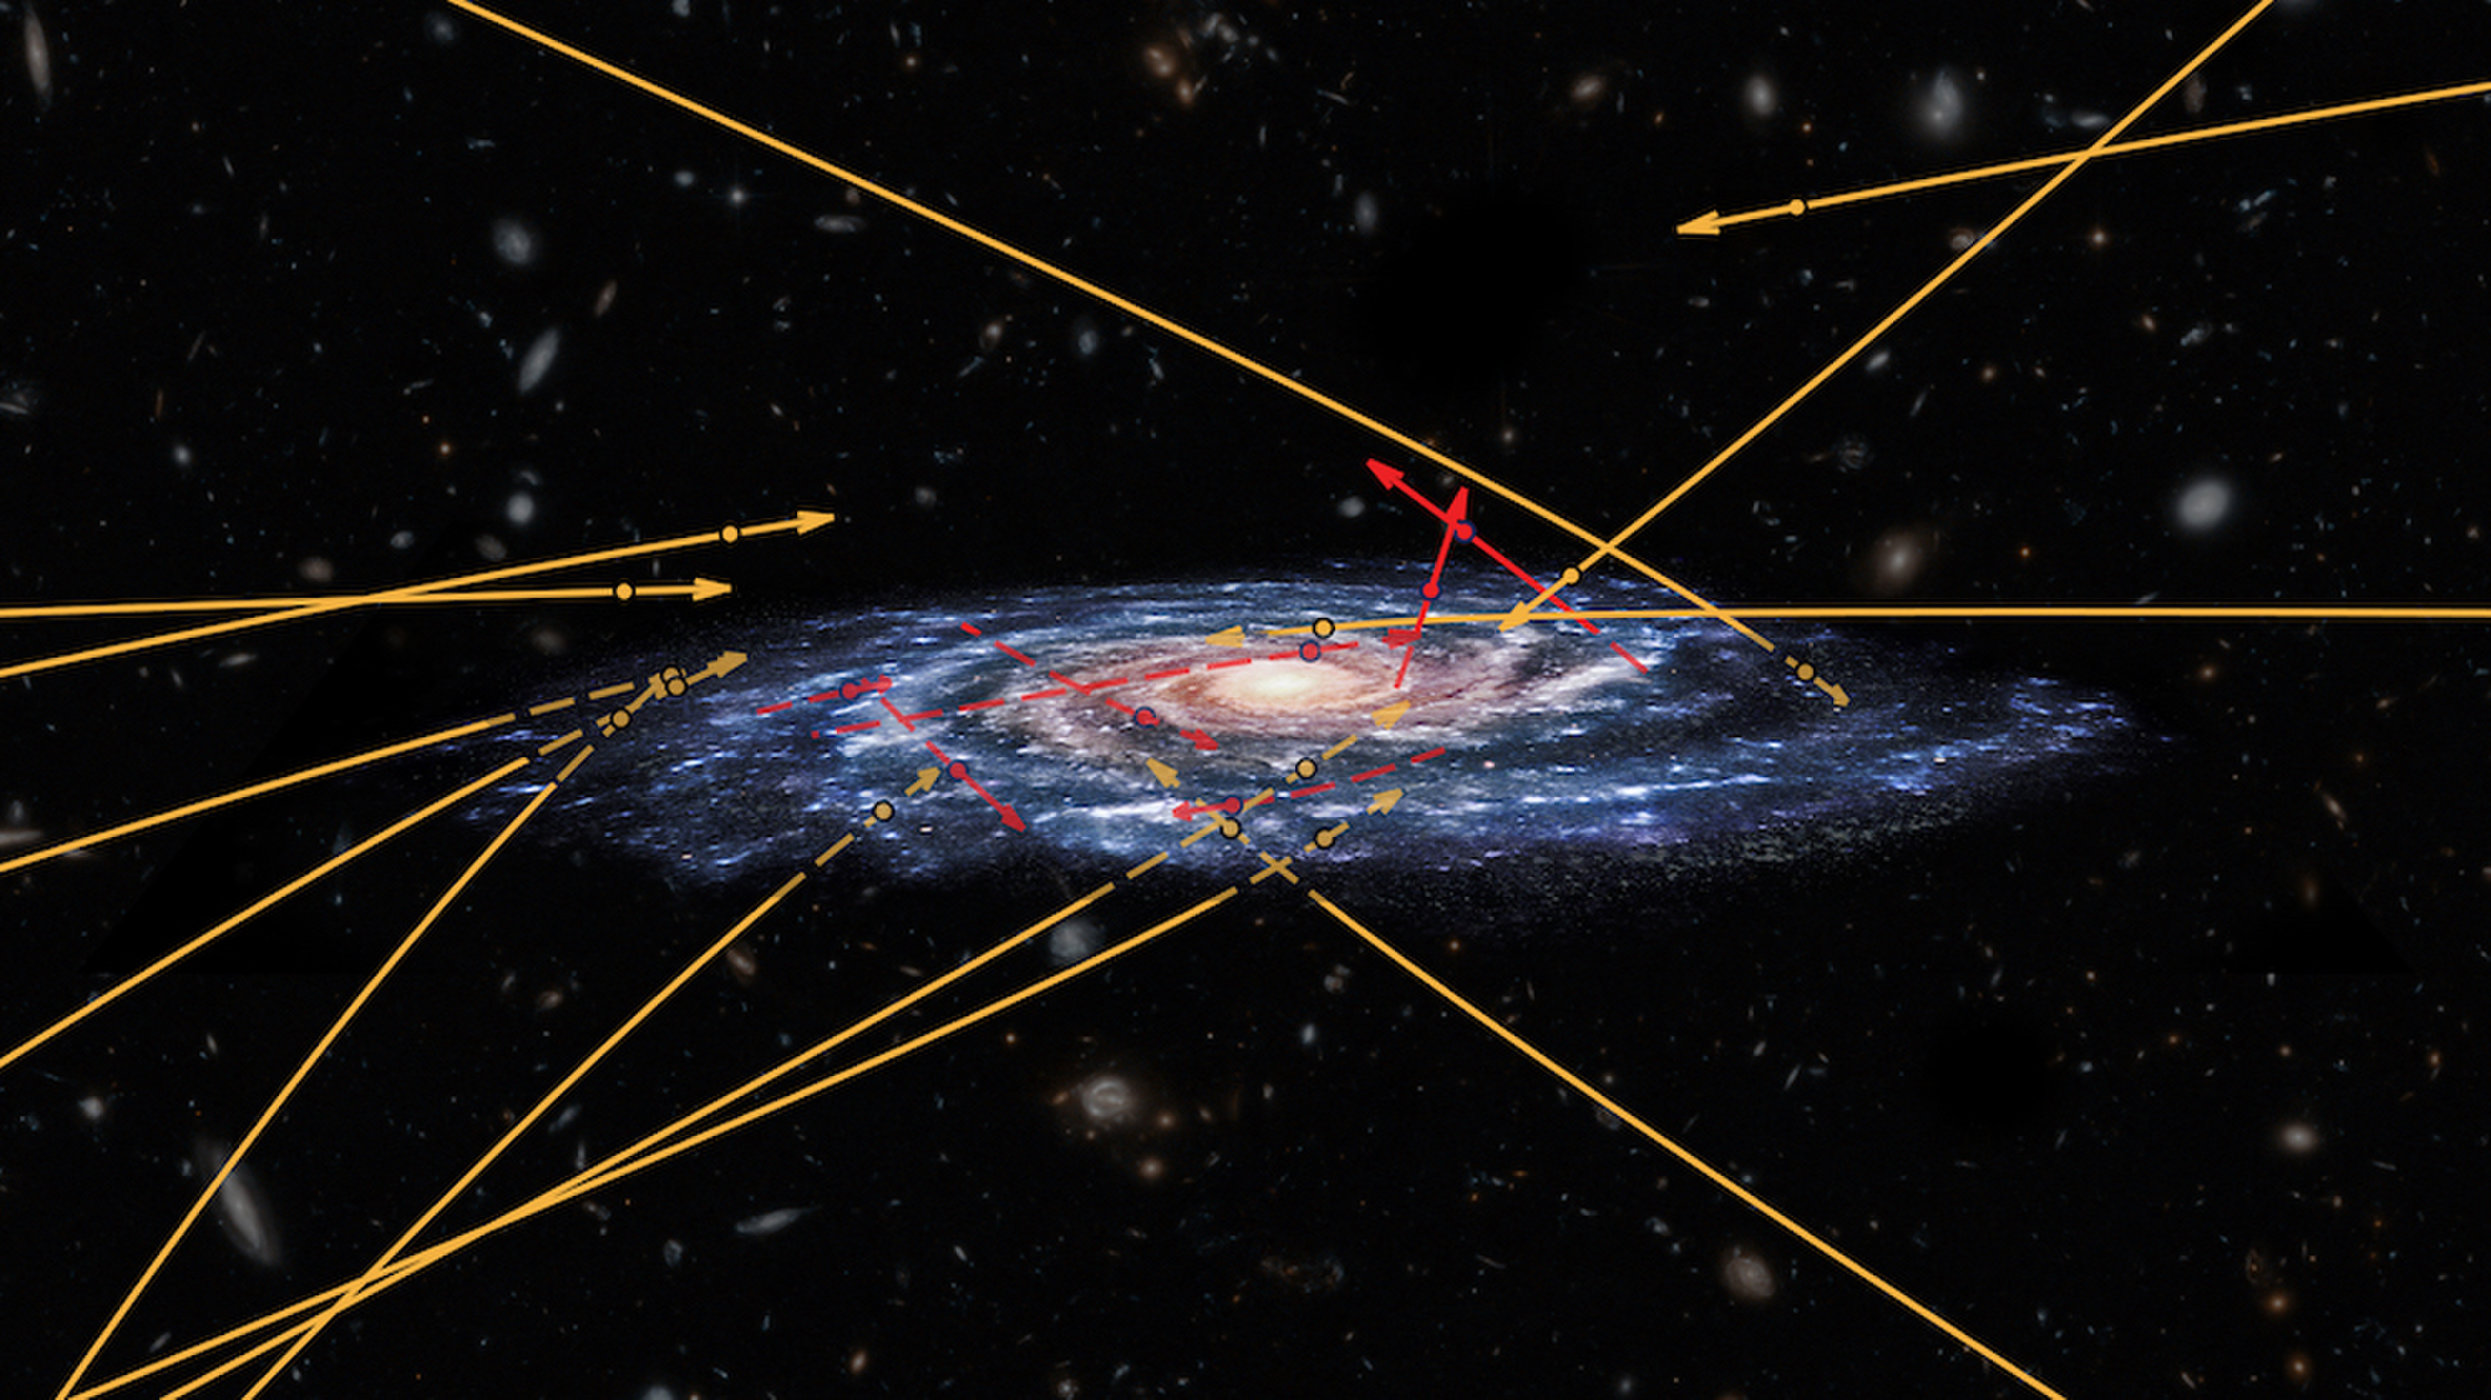 Αστρονόμοι ανακάλυψαν 13 άστρα που κινούνται με ασύλληπτη ταχύτητα και κατευθύνονται στον γαλαξία μας